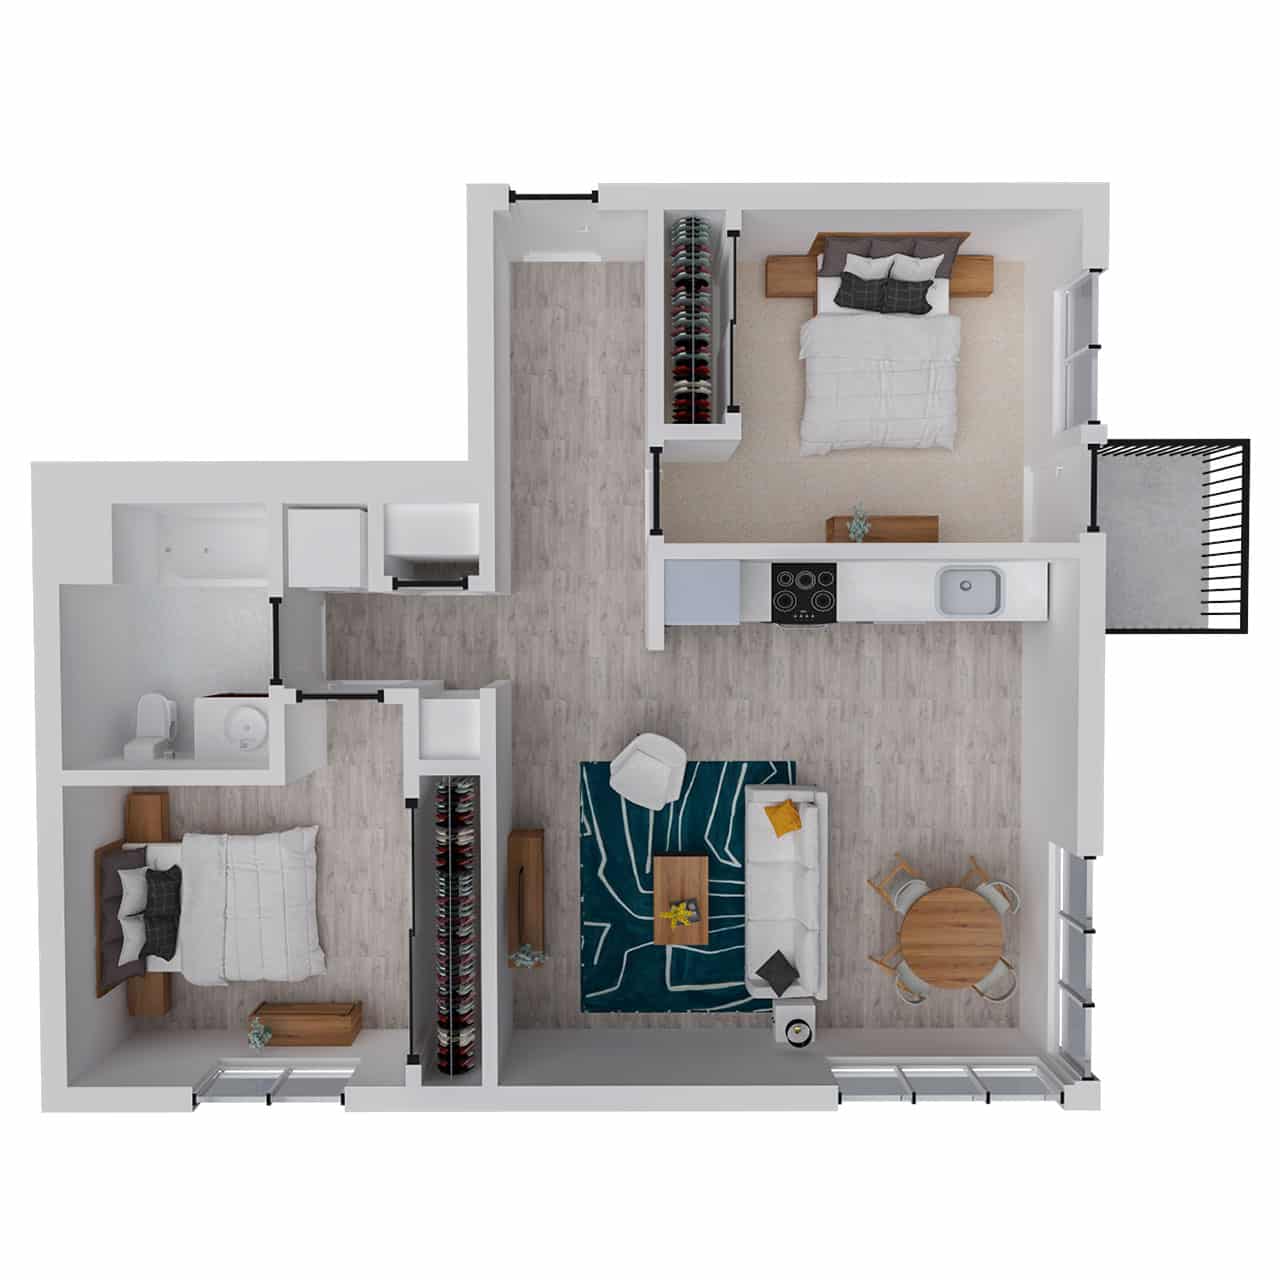 Attwell, B1-2 floor plan, 2 bedroom, 1 bath.